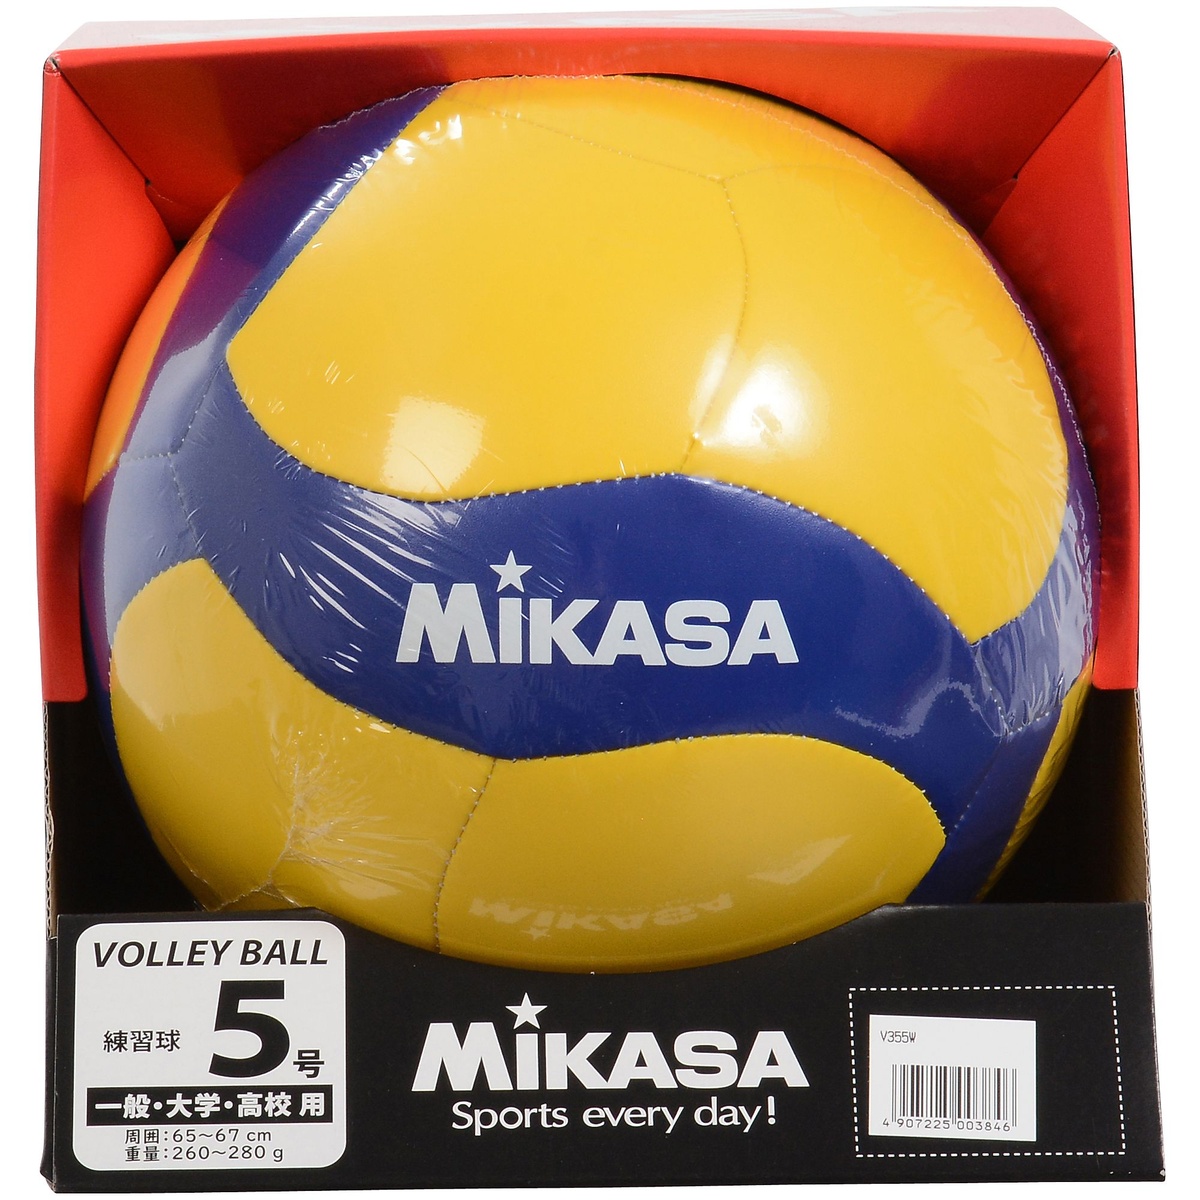 楽天市場 Mikasa ミカサ バレー5号 レクリエーション 縫い 黄 青 バレーボール 5号ボール 5 V355w スポーツオーソリティ 楽天市場店